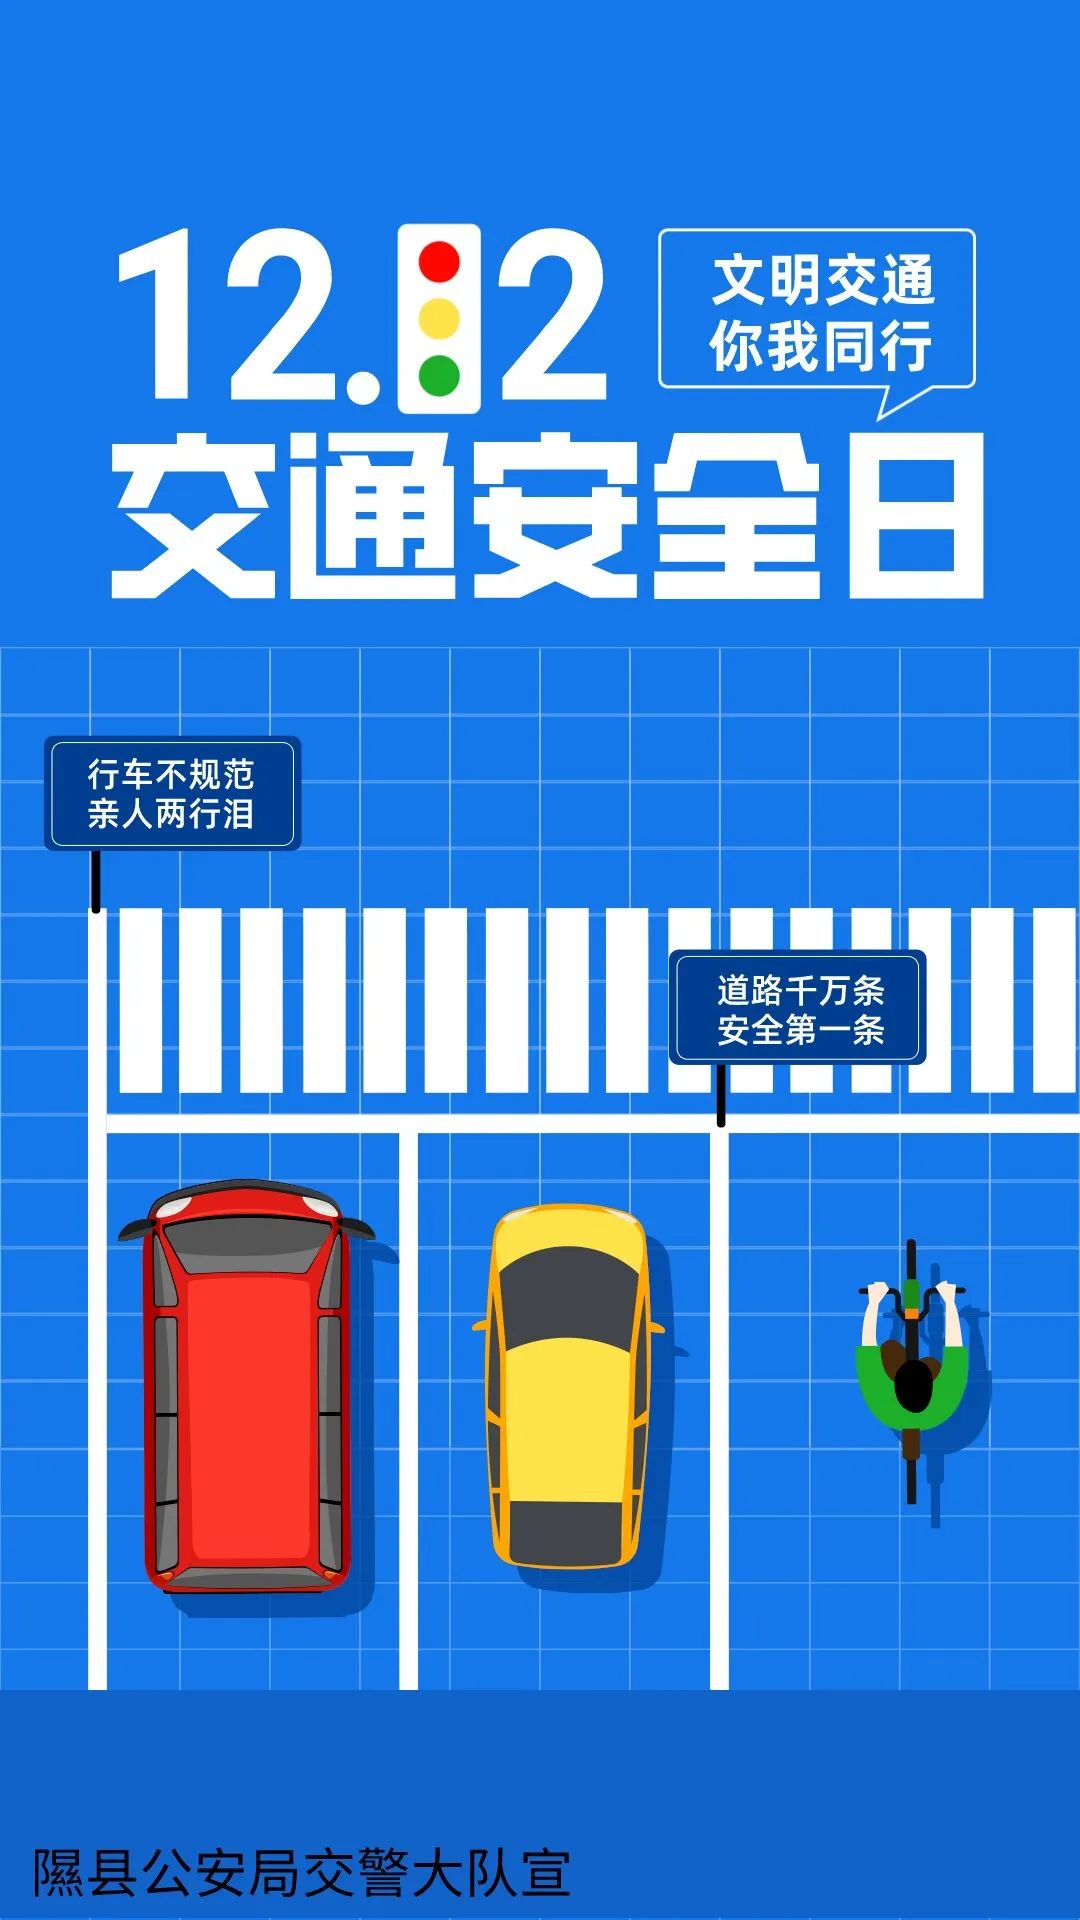 【预热122宣传】第十二个全国交通安全日重磅来袭:临汾隰县公安交警